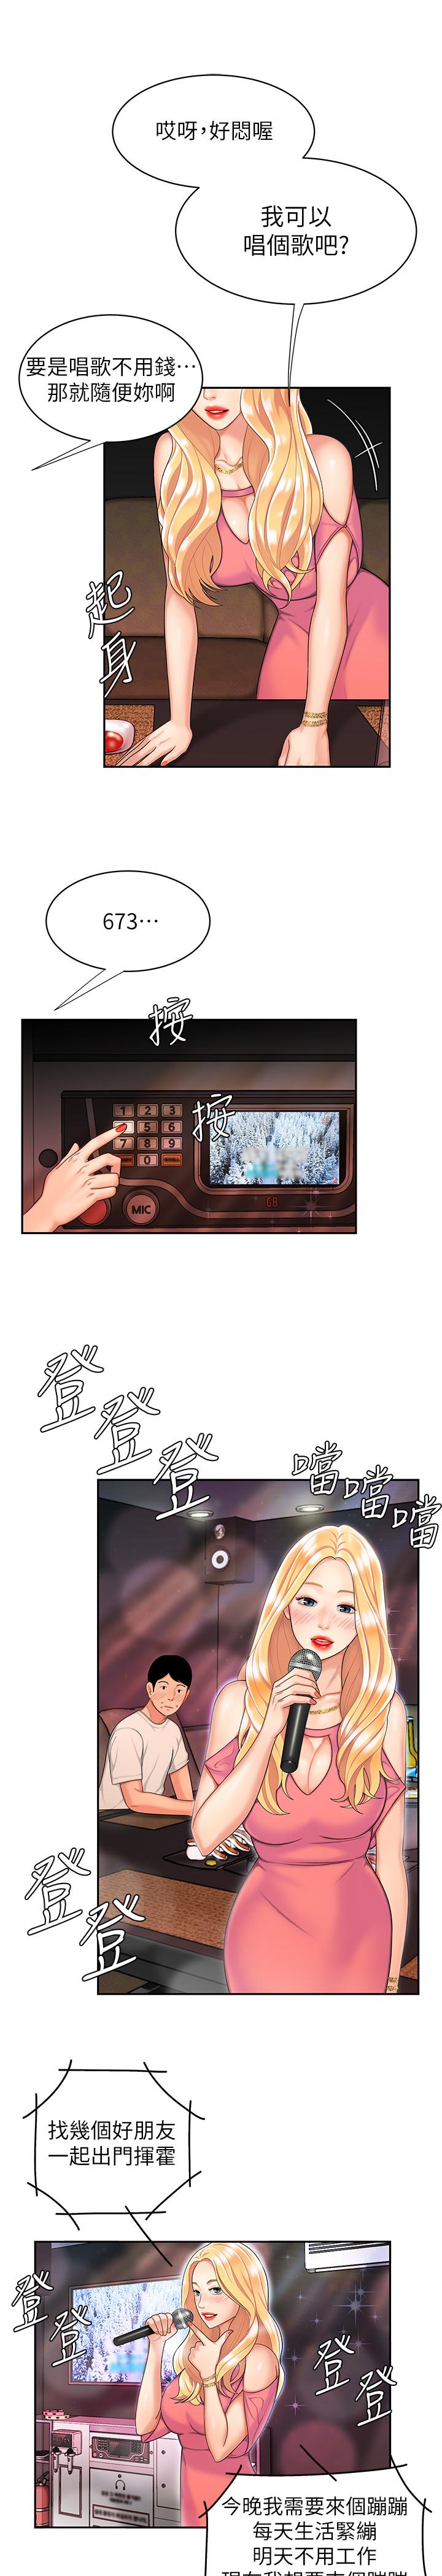 韩国污漫画 幸福外送員 第12话-炸鸡店老板不间断的诱惑 19